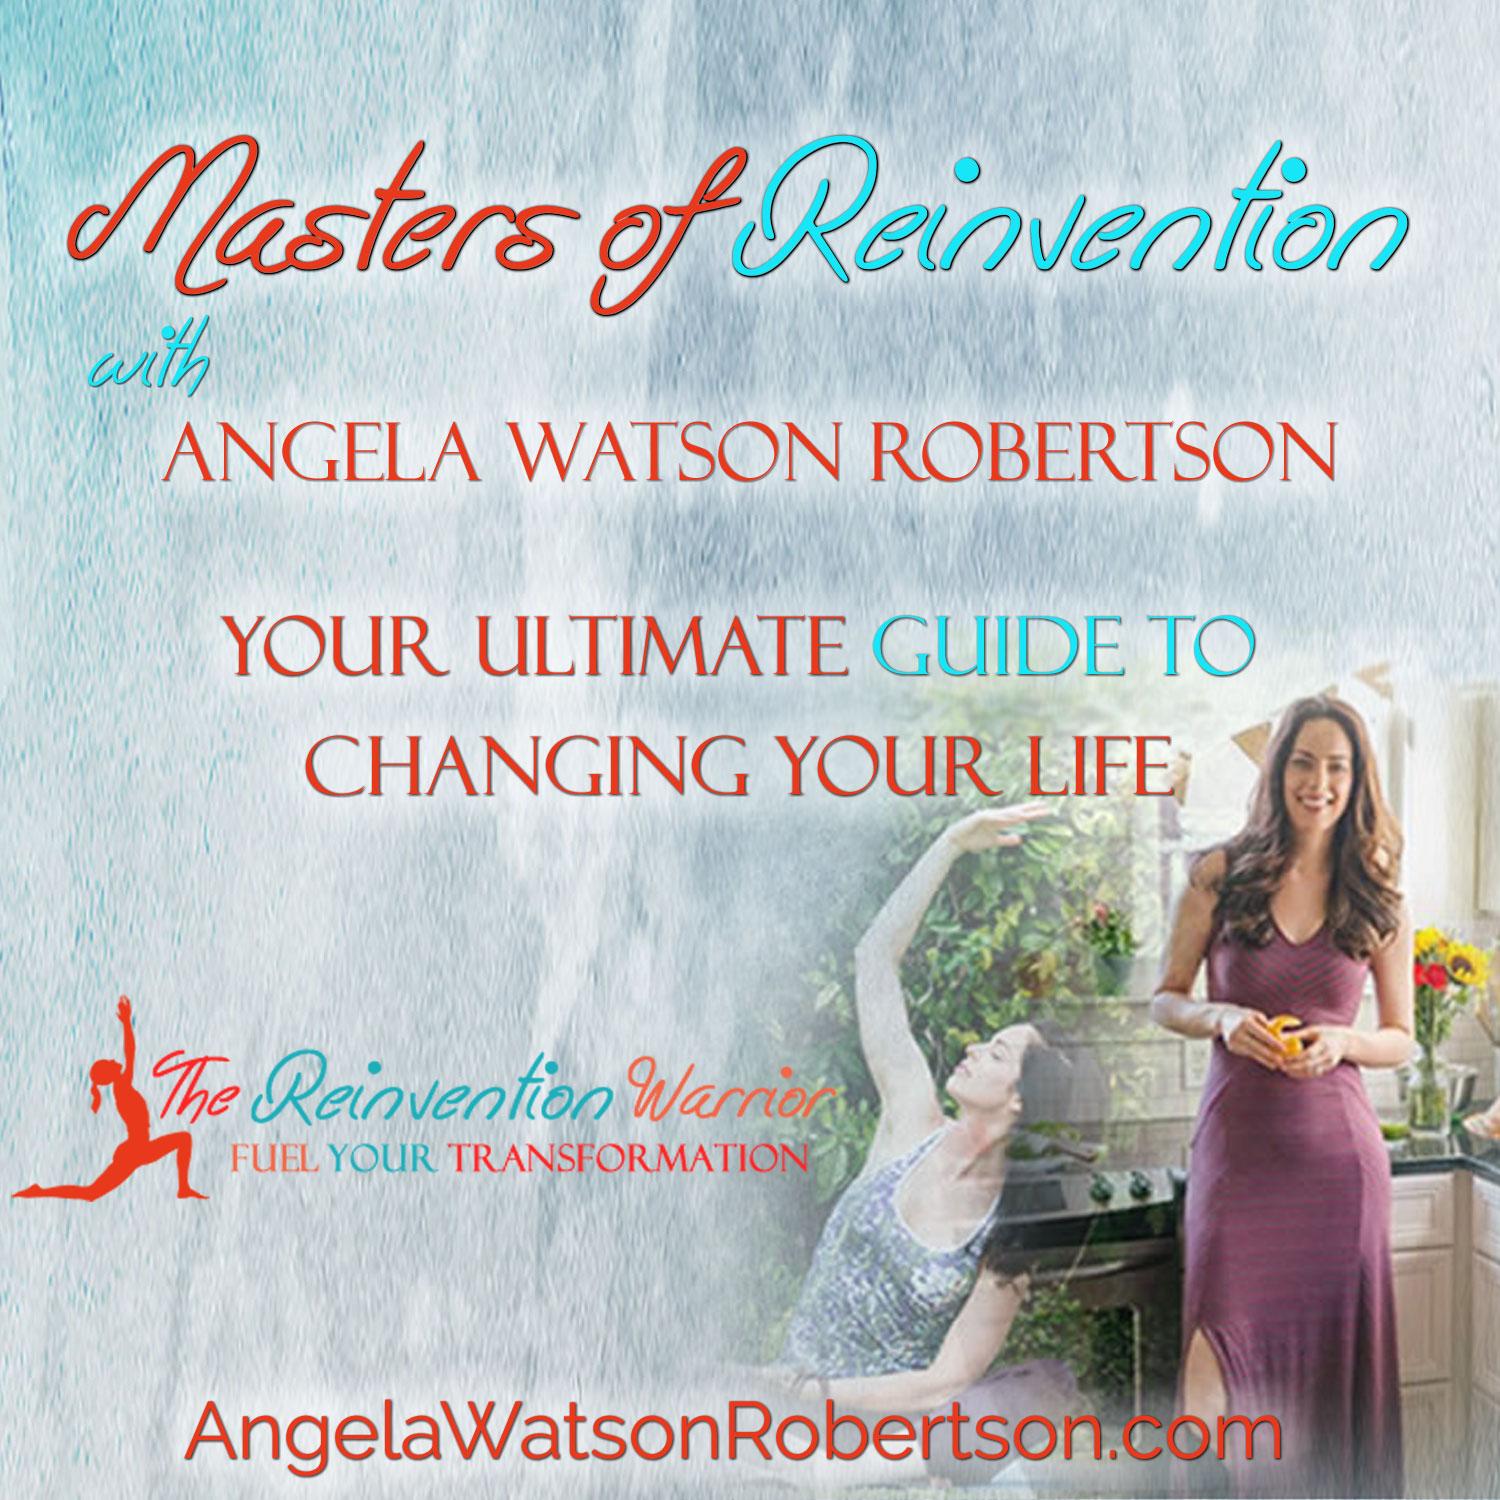 Angela Watson Robertson